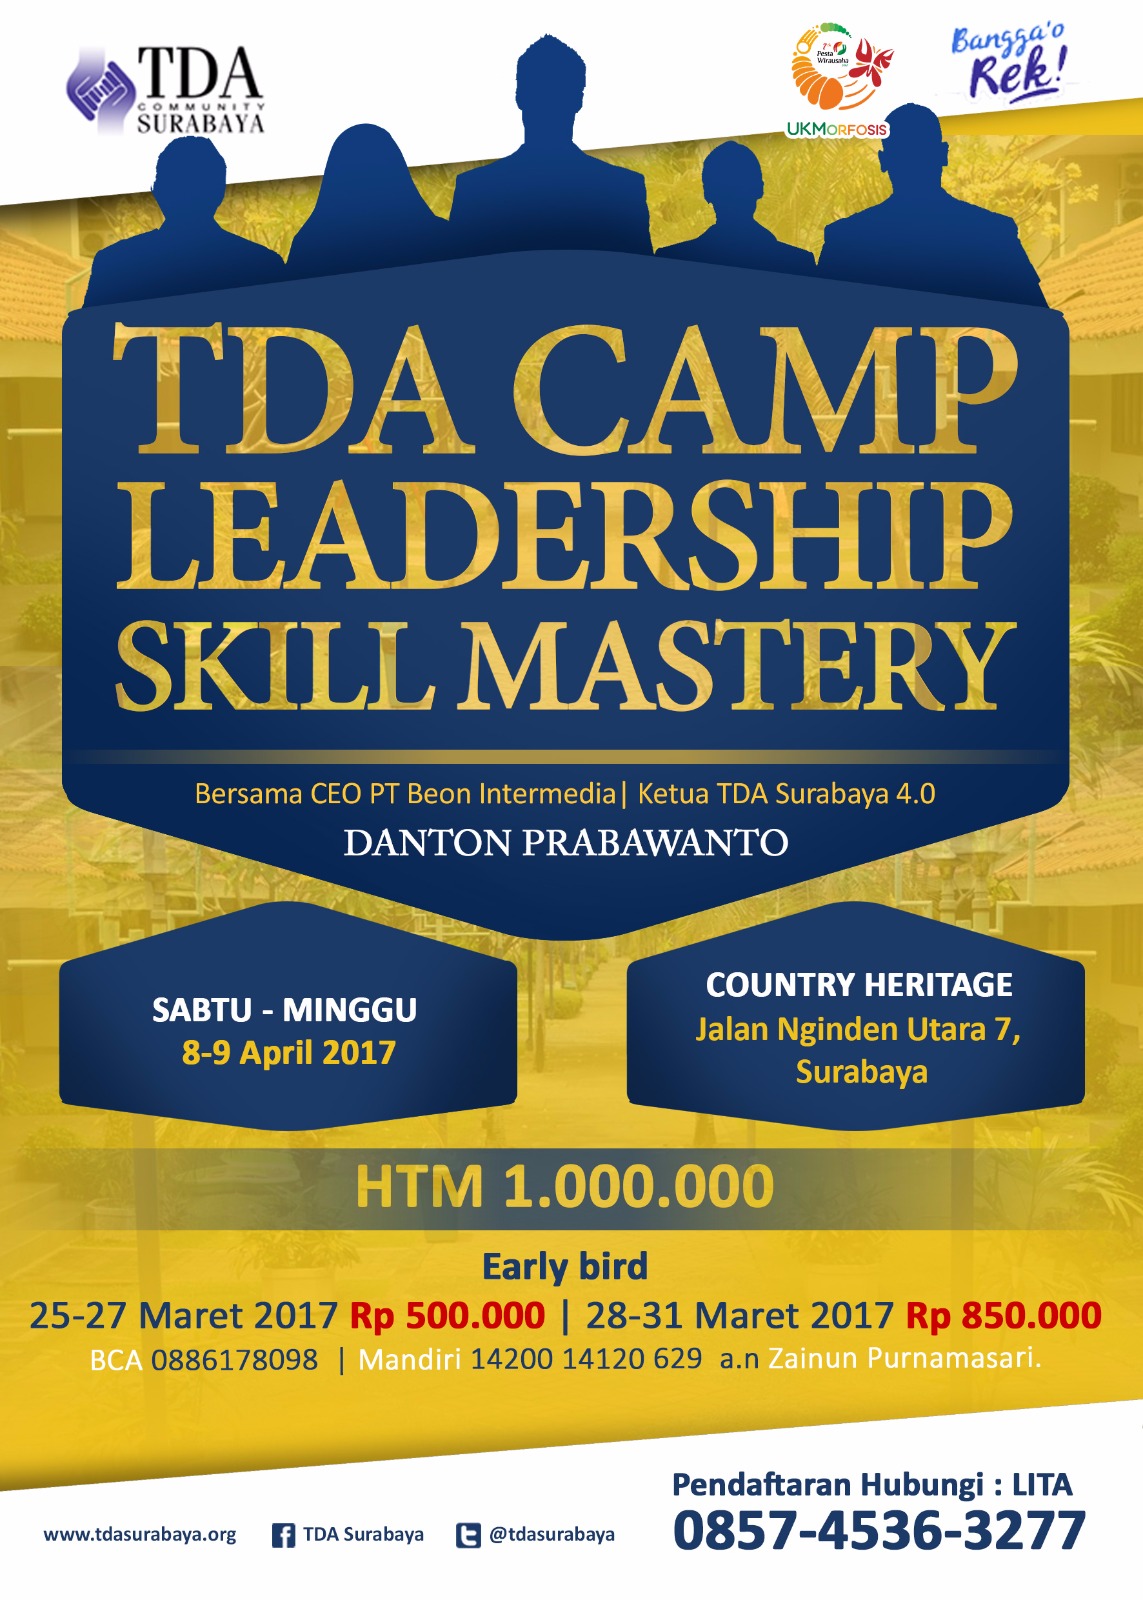 TDA CAMP Leadership Skill Mastery Bersama Danton Prabawanto